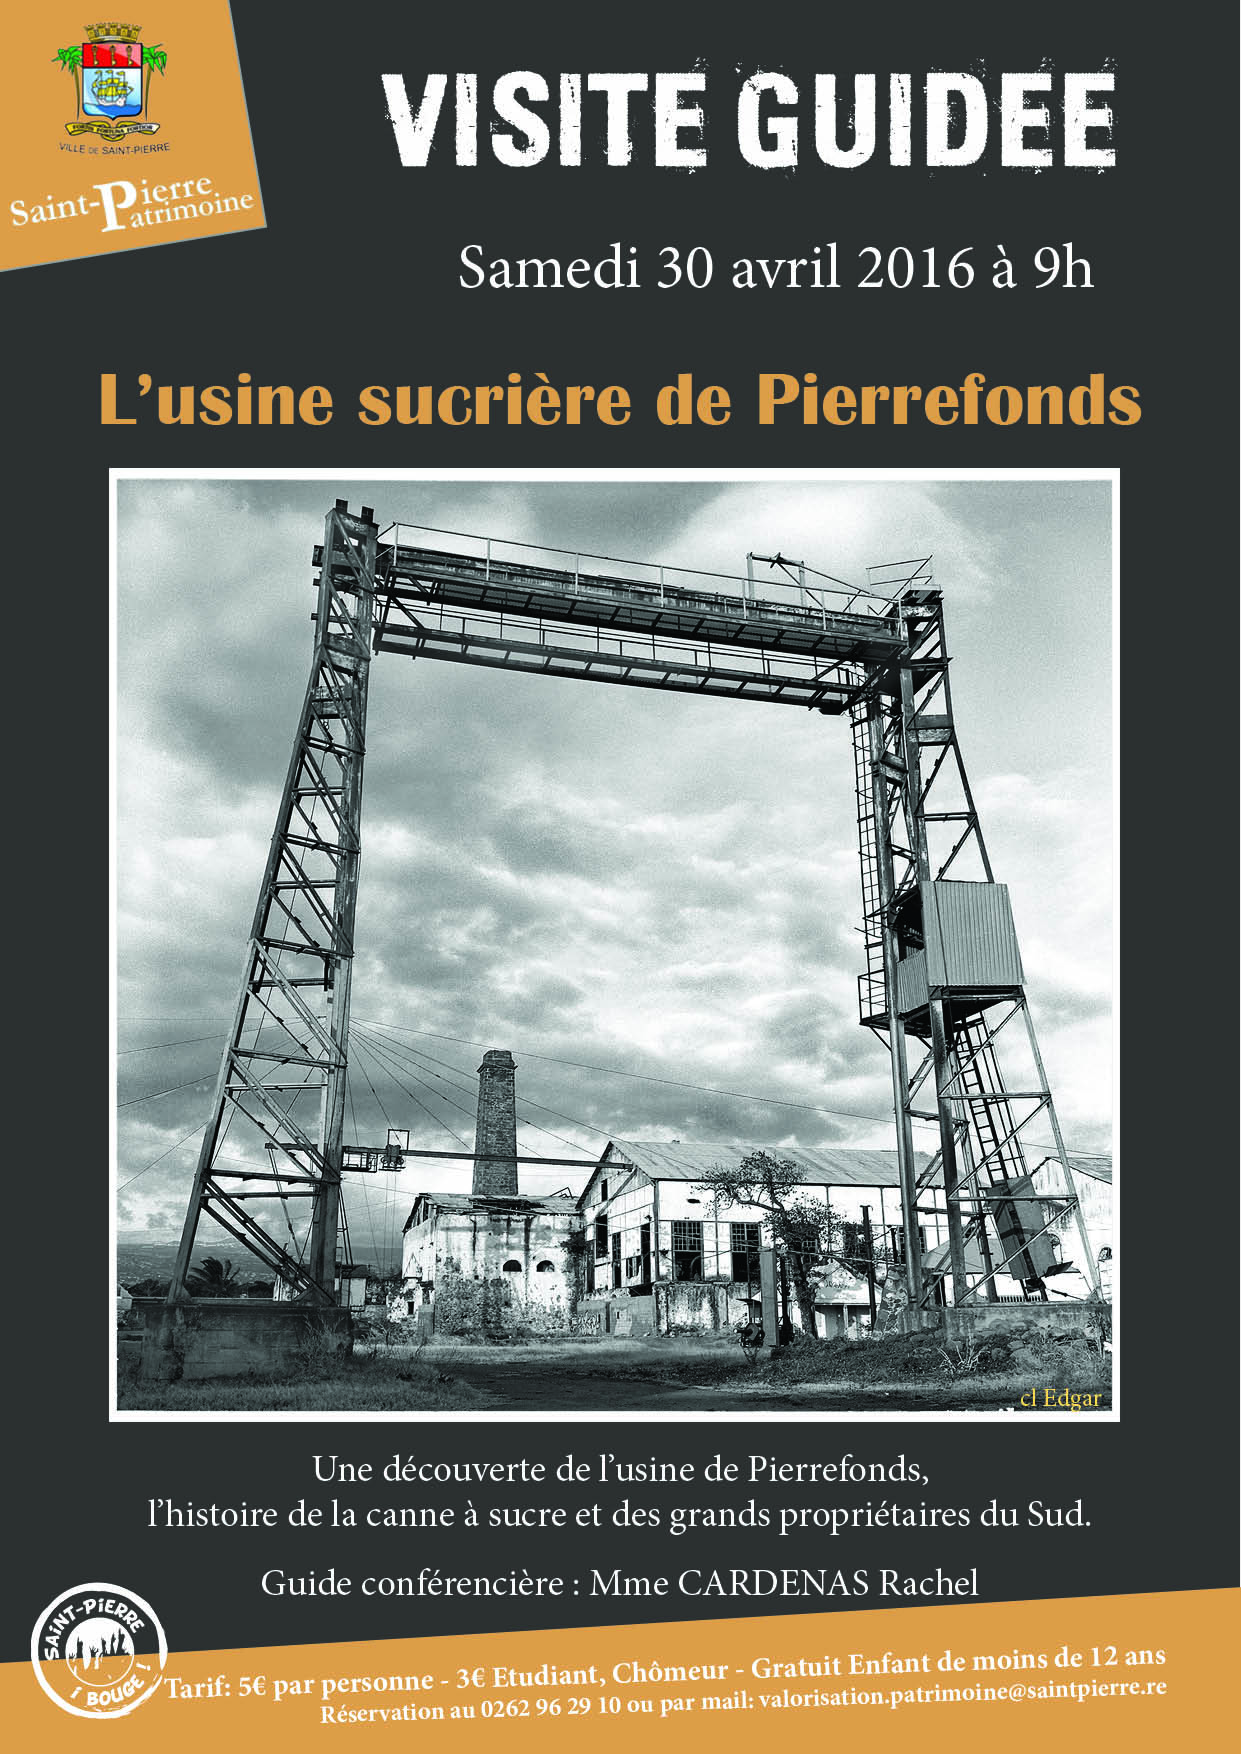 Visite de l'usine sucrière de Pierrefonds dimanche 30 avril 2016